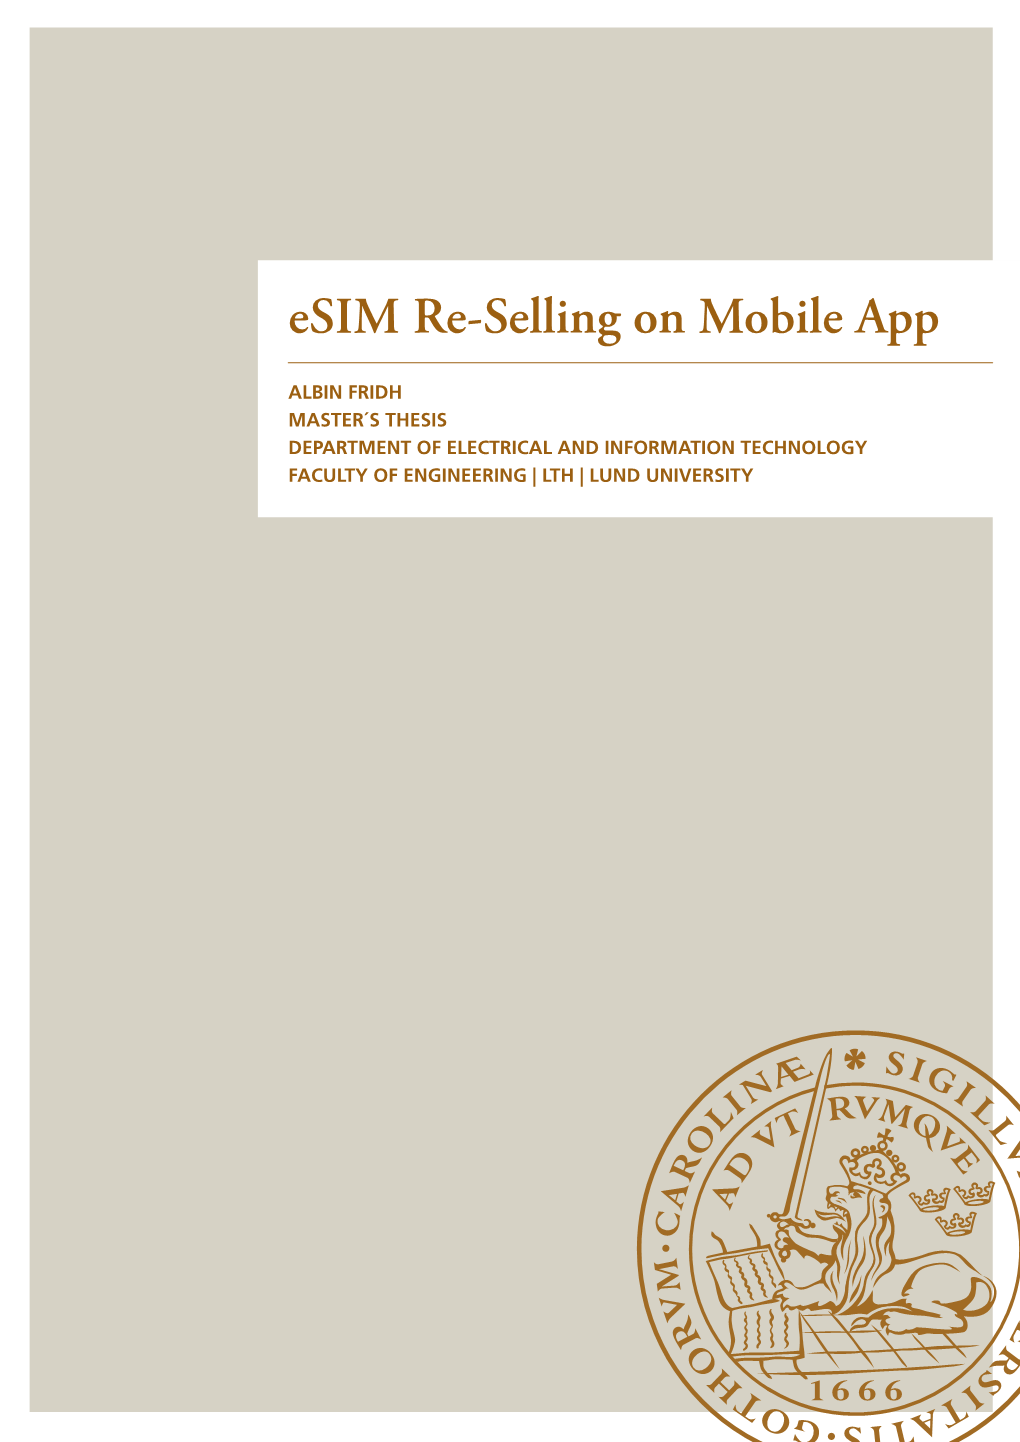 Esim Re-Selling on Mobile App